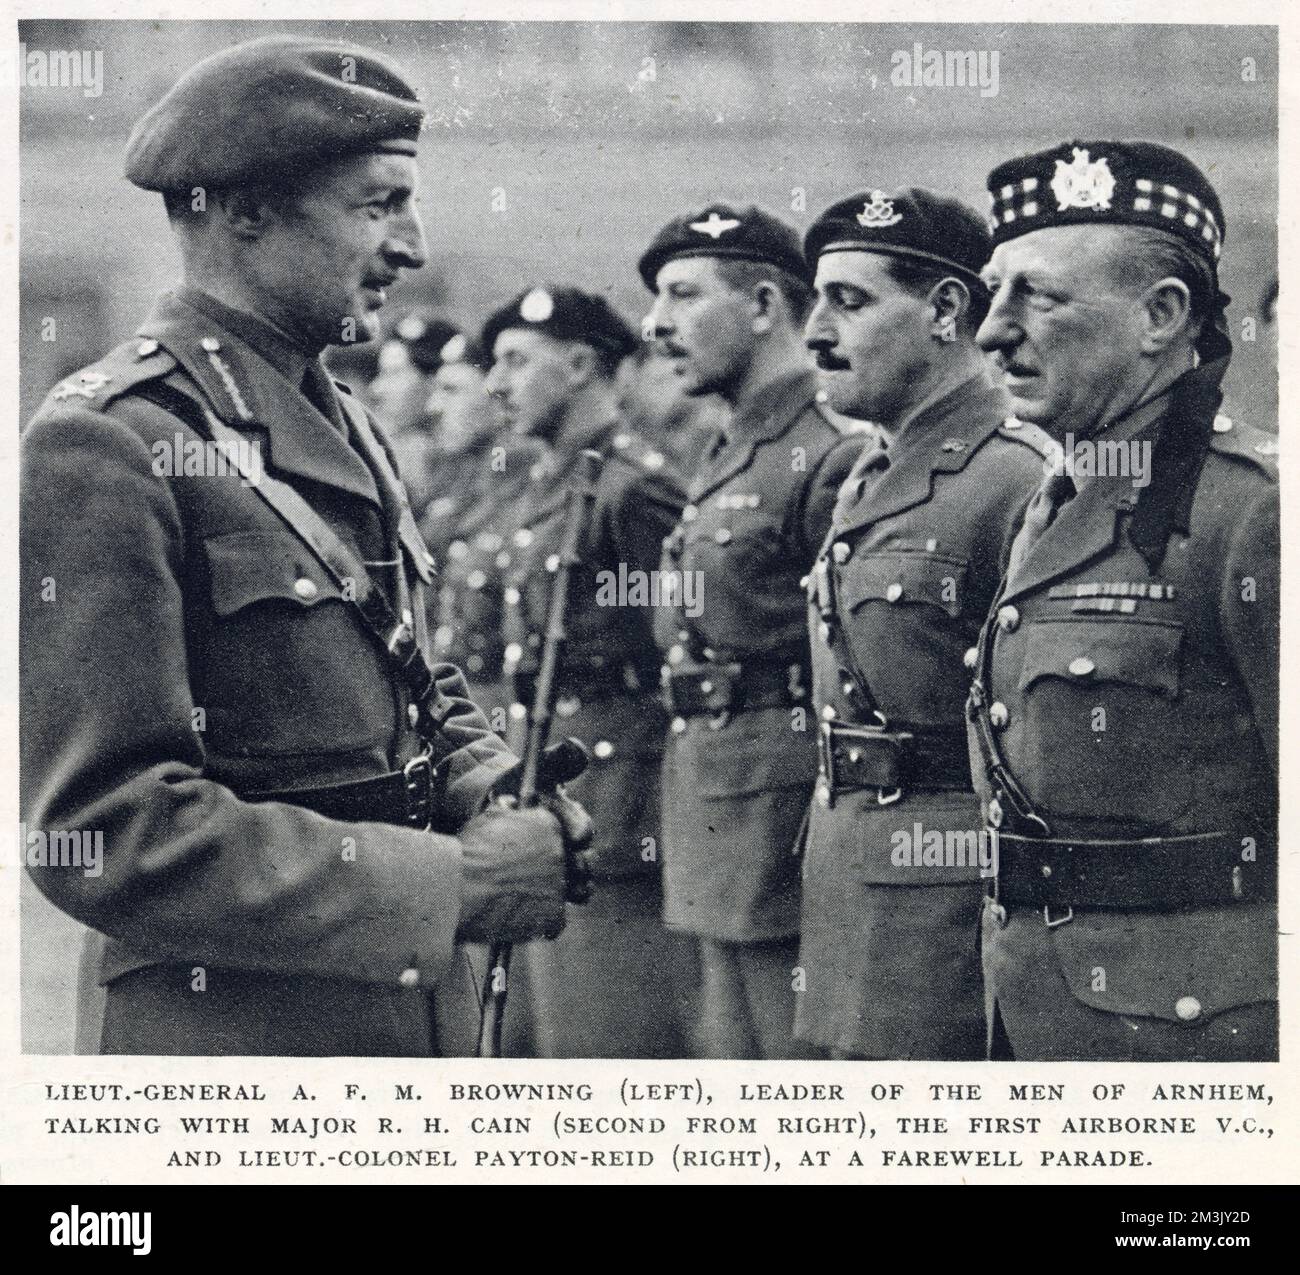 Generalleutnant A.F.M. Browning, Commander der British First Airborne (links), spricht mit Major R.H. Cain (zweite rechts), der erste V.C. Gewinner der Airborne, und Lieutenant-Colonel Payton-Reid (rechts) bei einer Abschiedsparade im Buckingham Palace, London, 6. Dezember 1944. Stockfoto